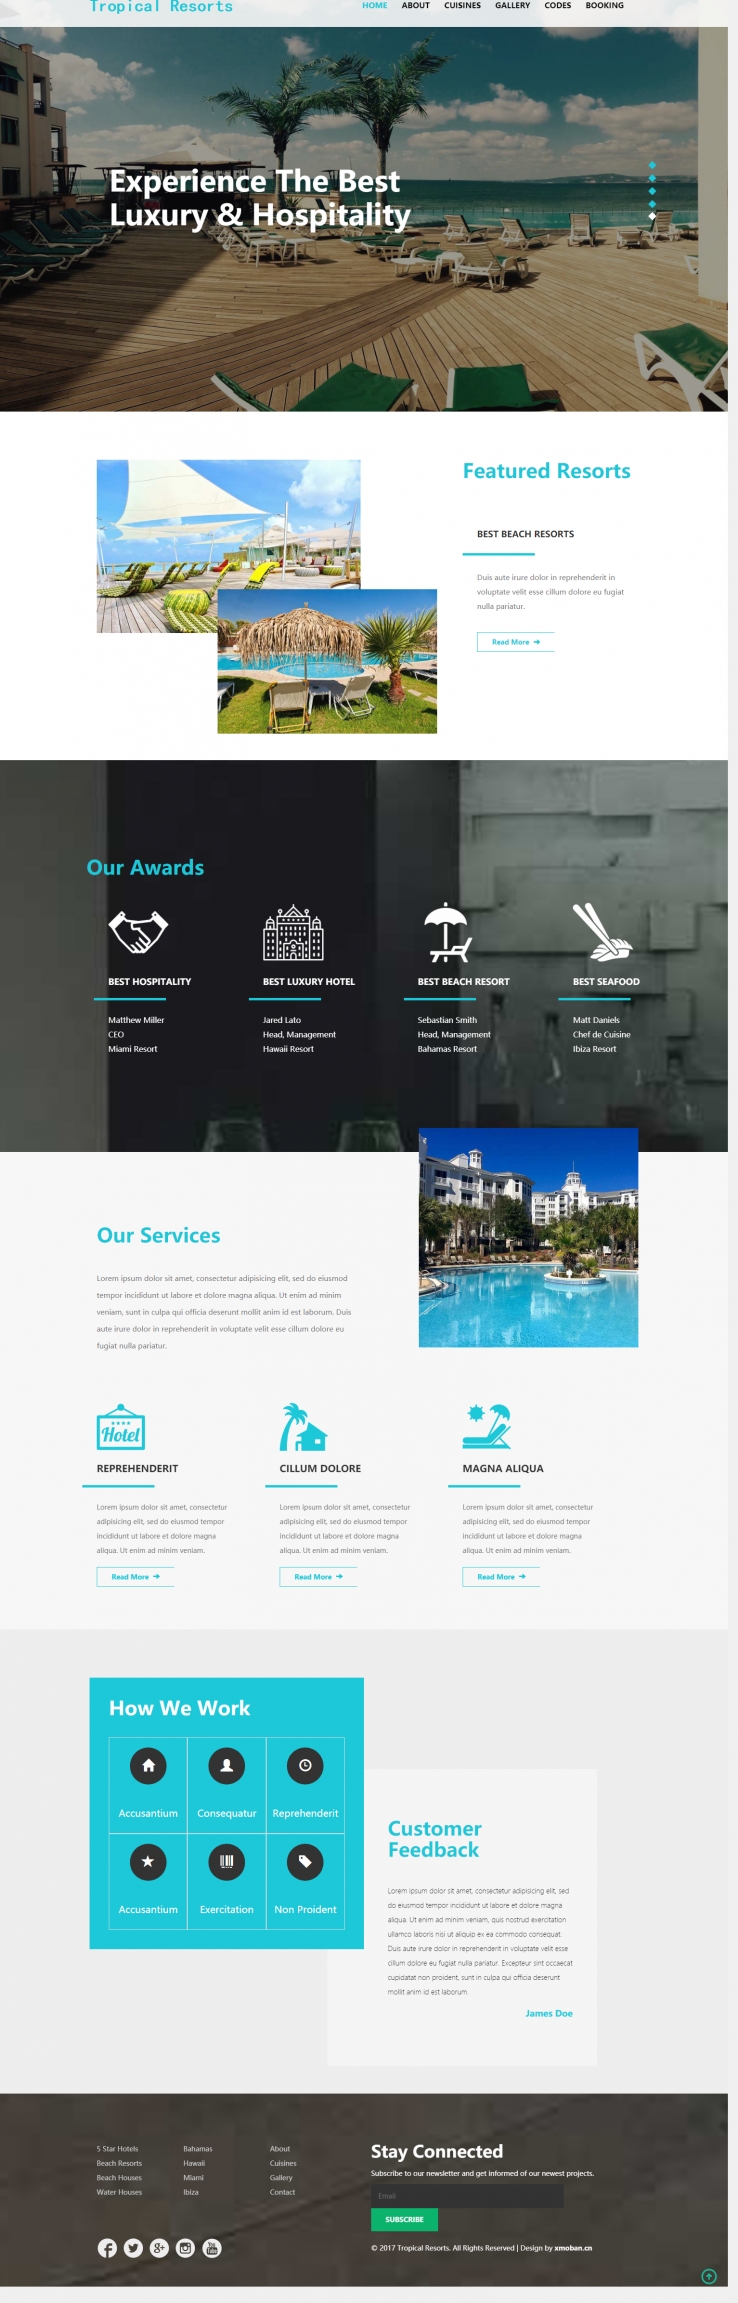 蓝色简洁风格的假村酒店企业网站源码下载